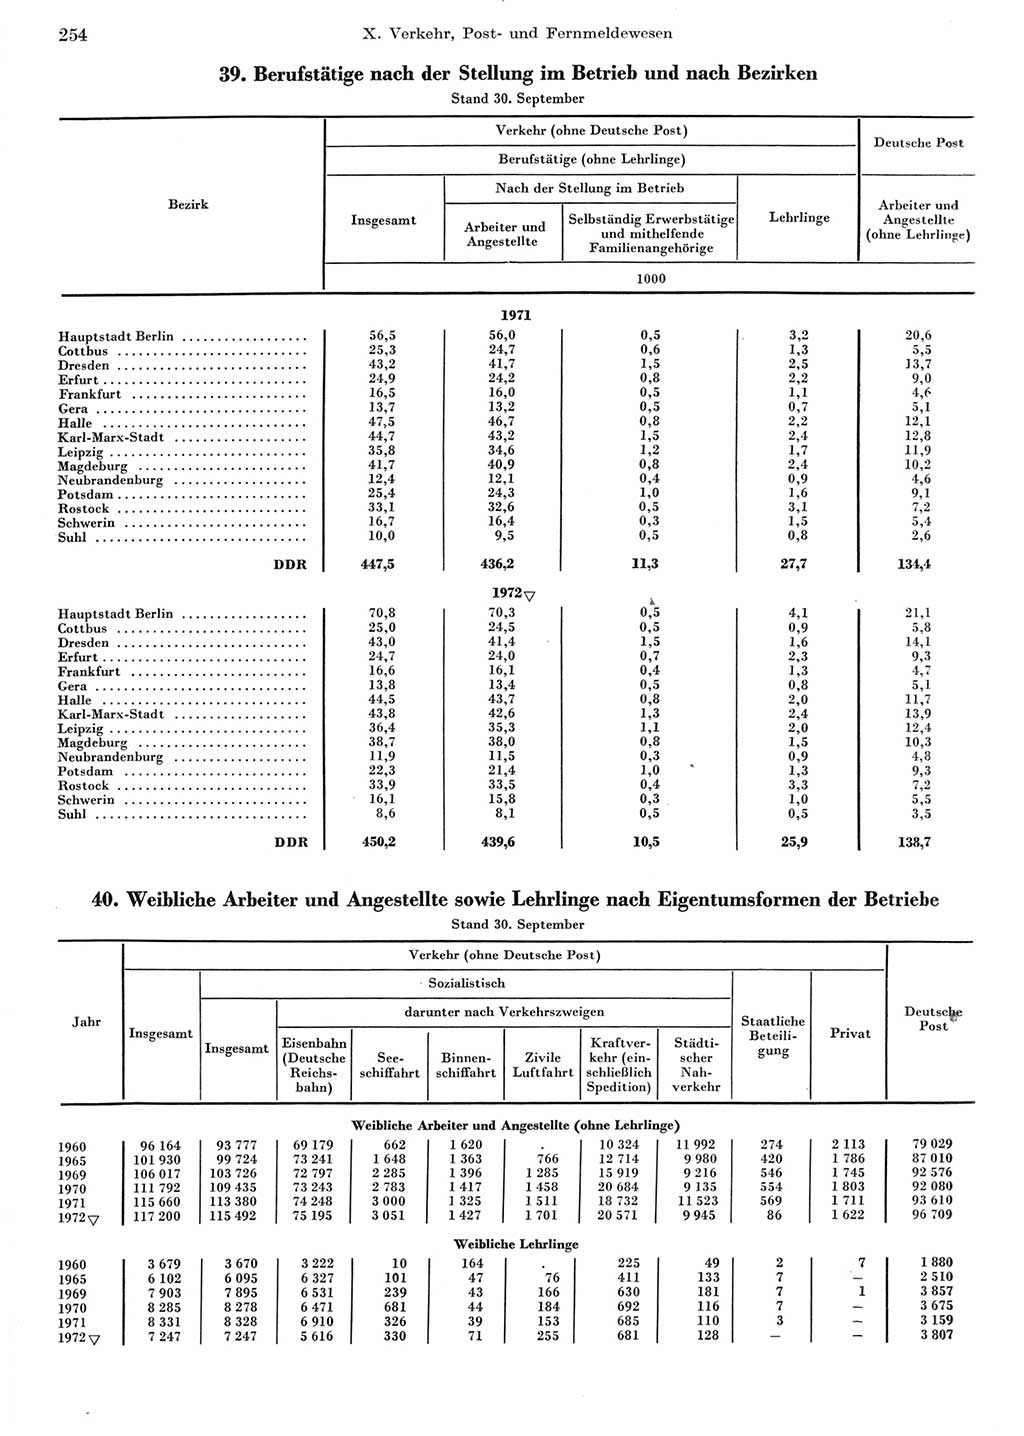 Statistisches Jahrbuch der Deutschen Demokratischen Republik (DDR) 1973, Seite 254 (Stat. Jb. DDR 1973, S. 254)